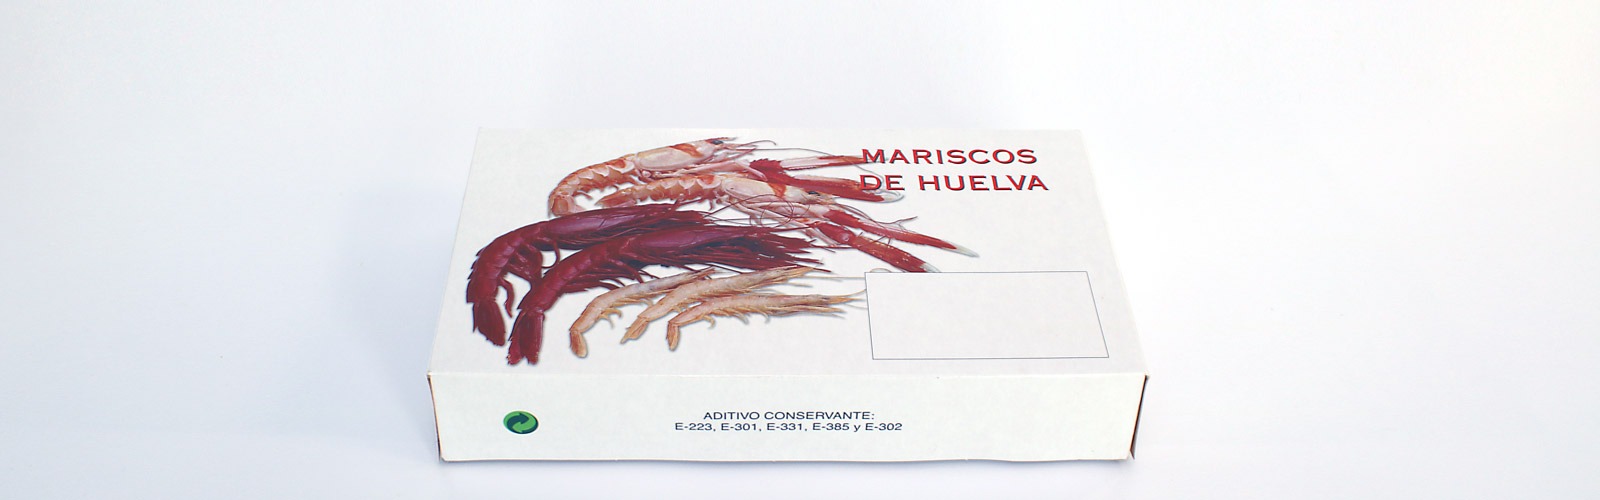 Personalización - Envases Huelva